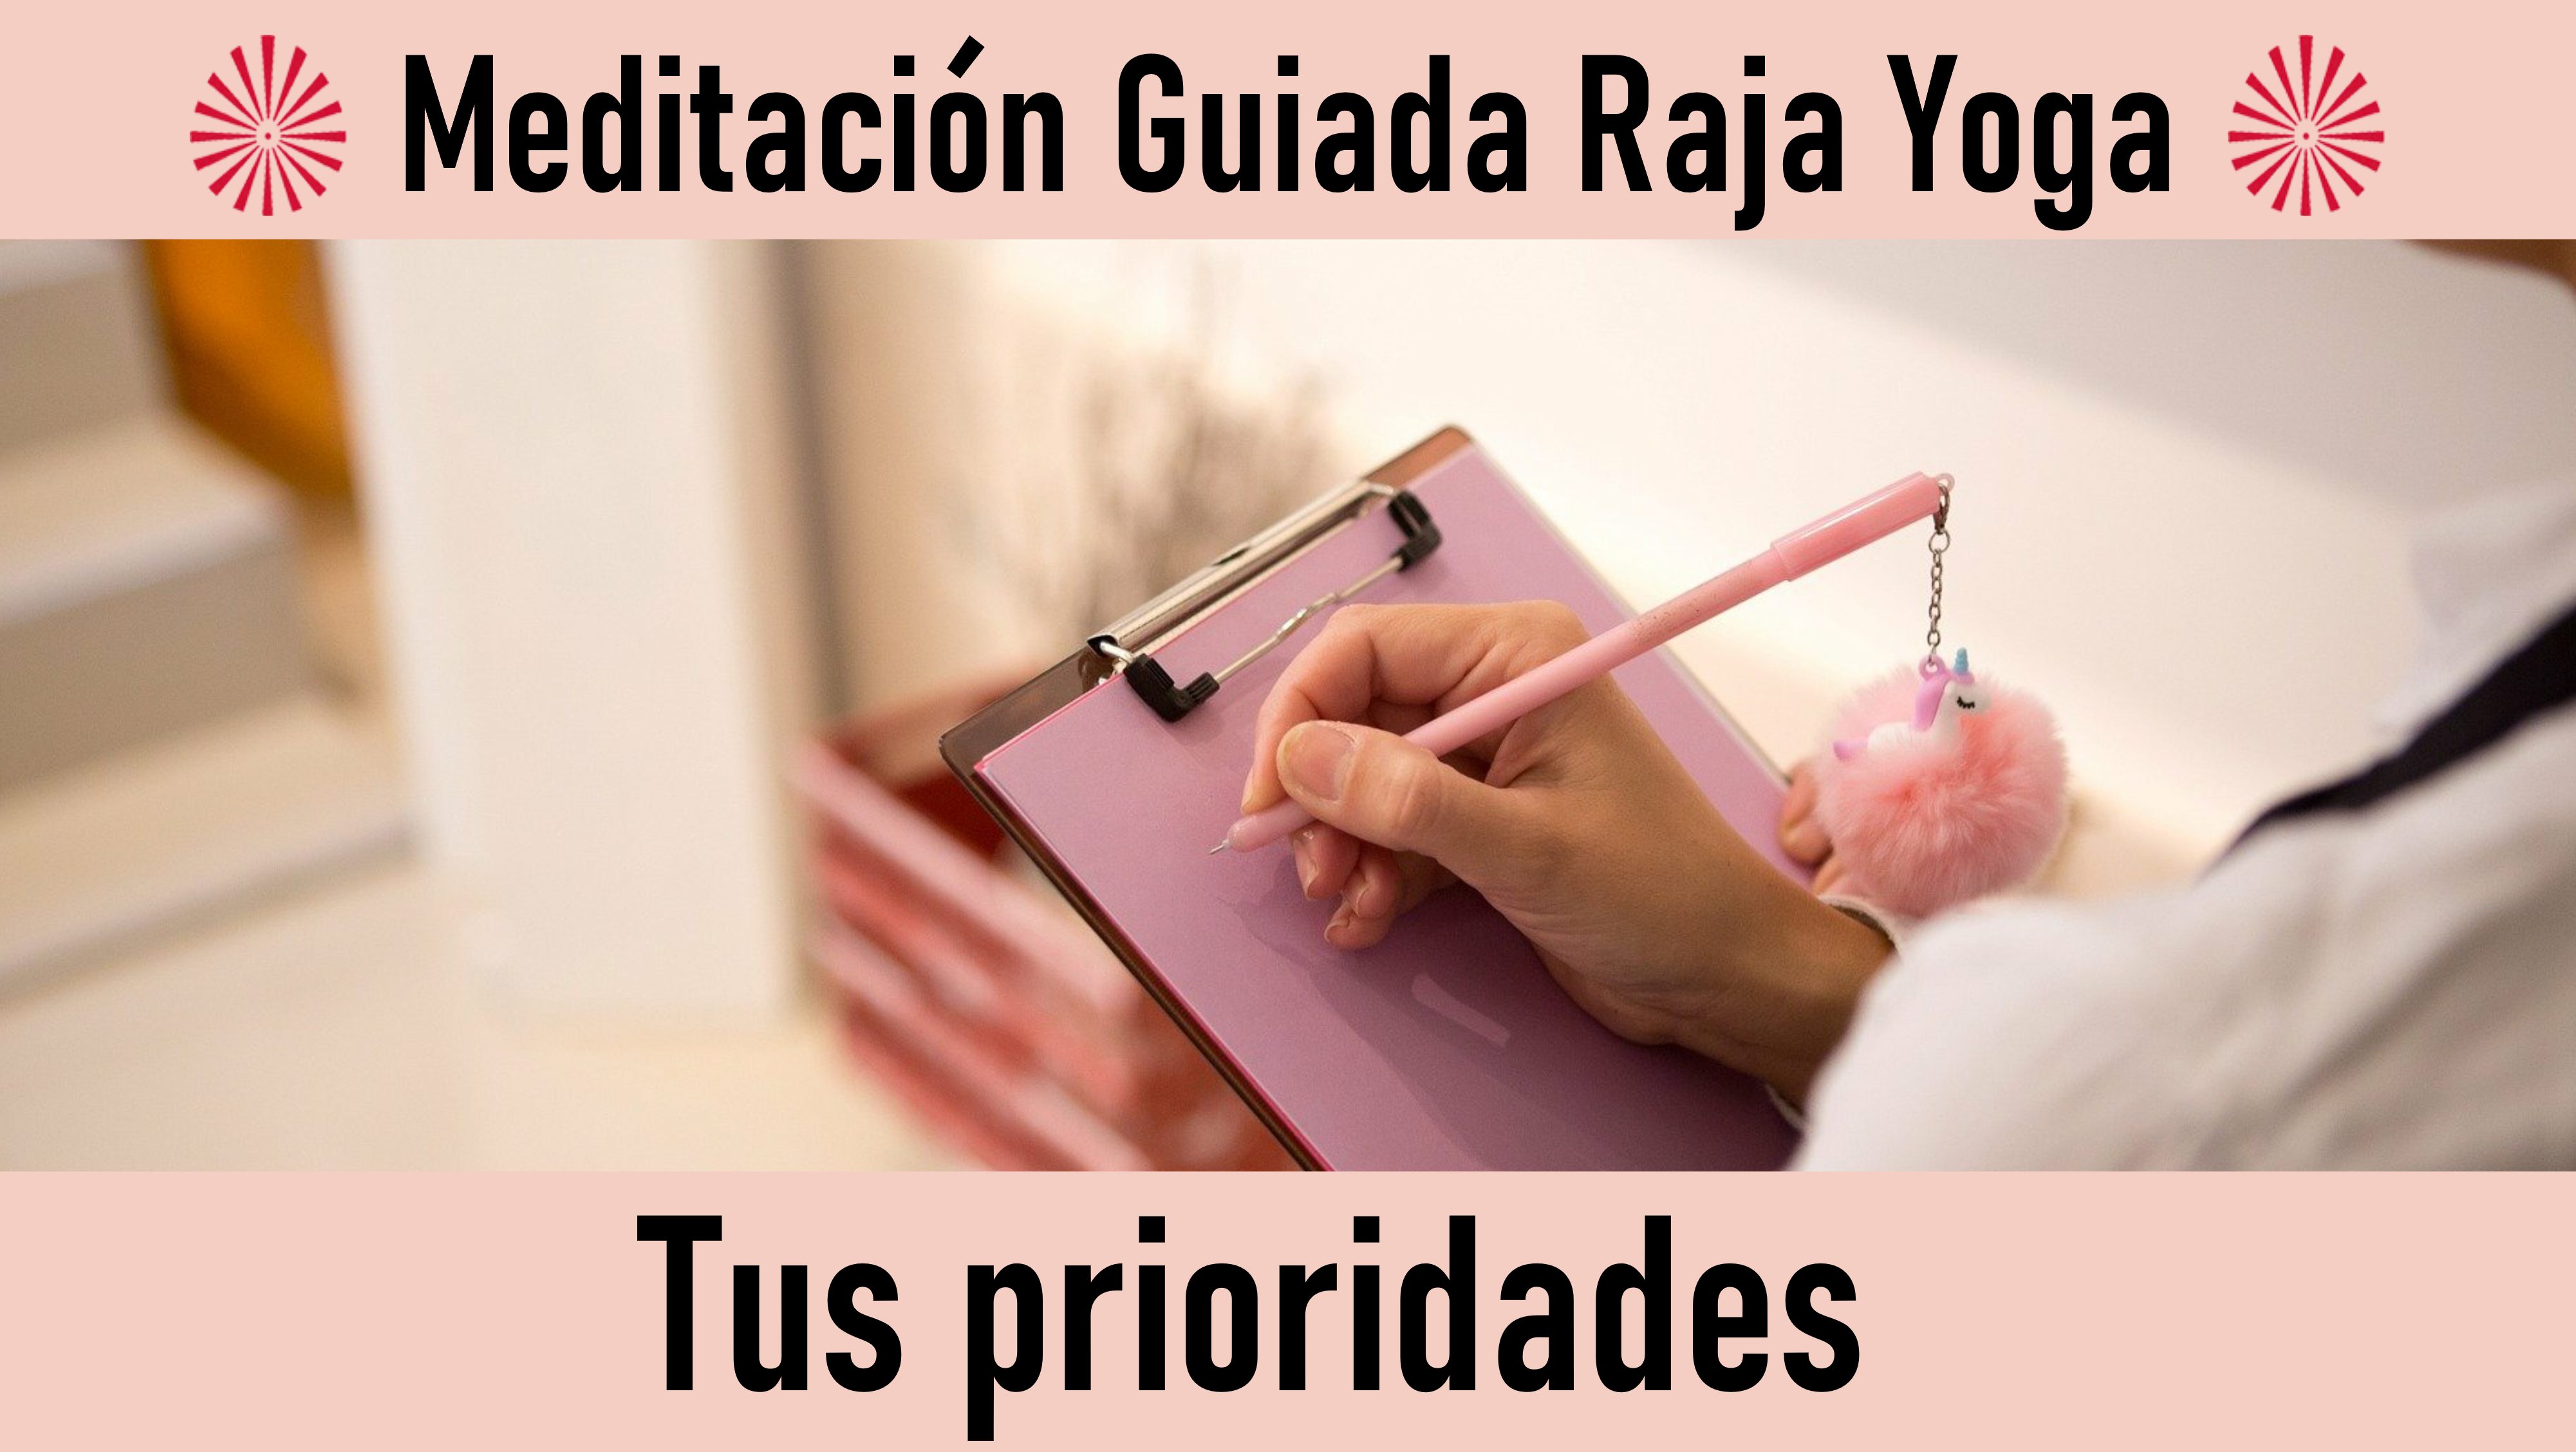 Meditación Raja Yoga: Tus prioridades (16 Octubre 2020) On-line desde Sevilla